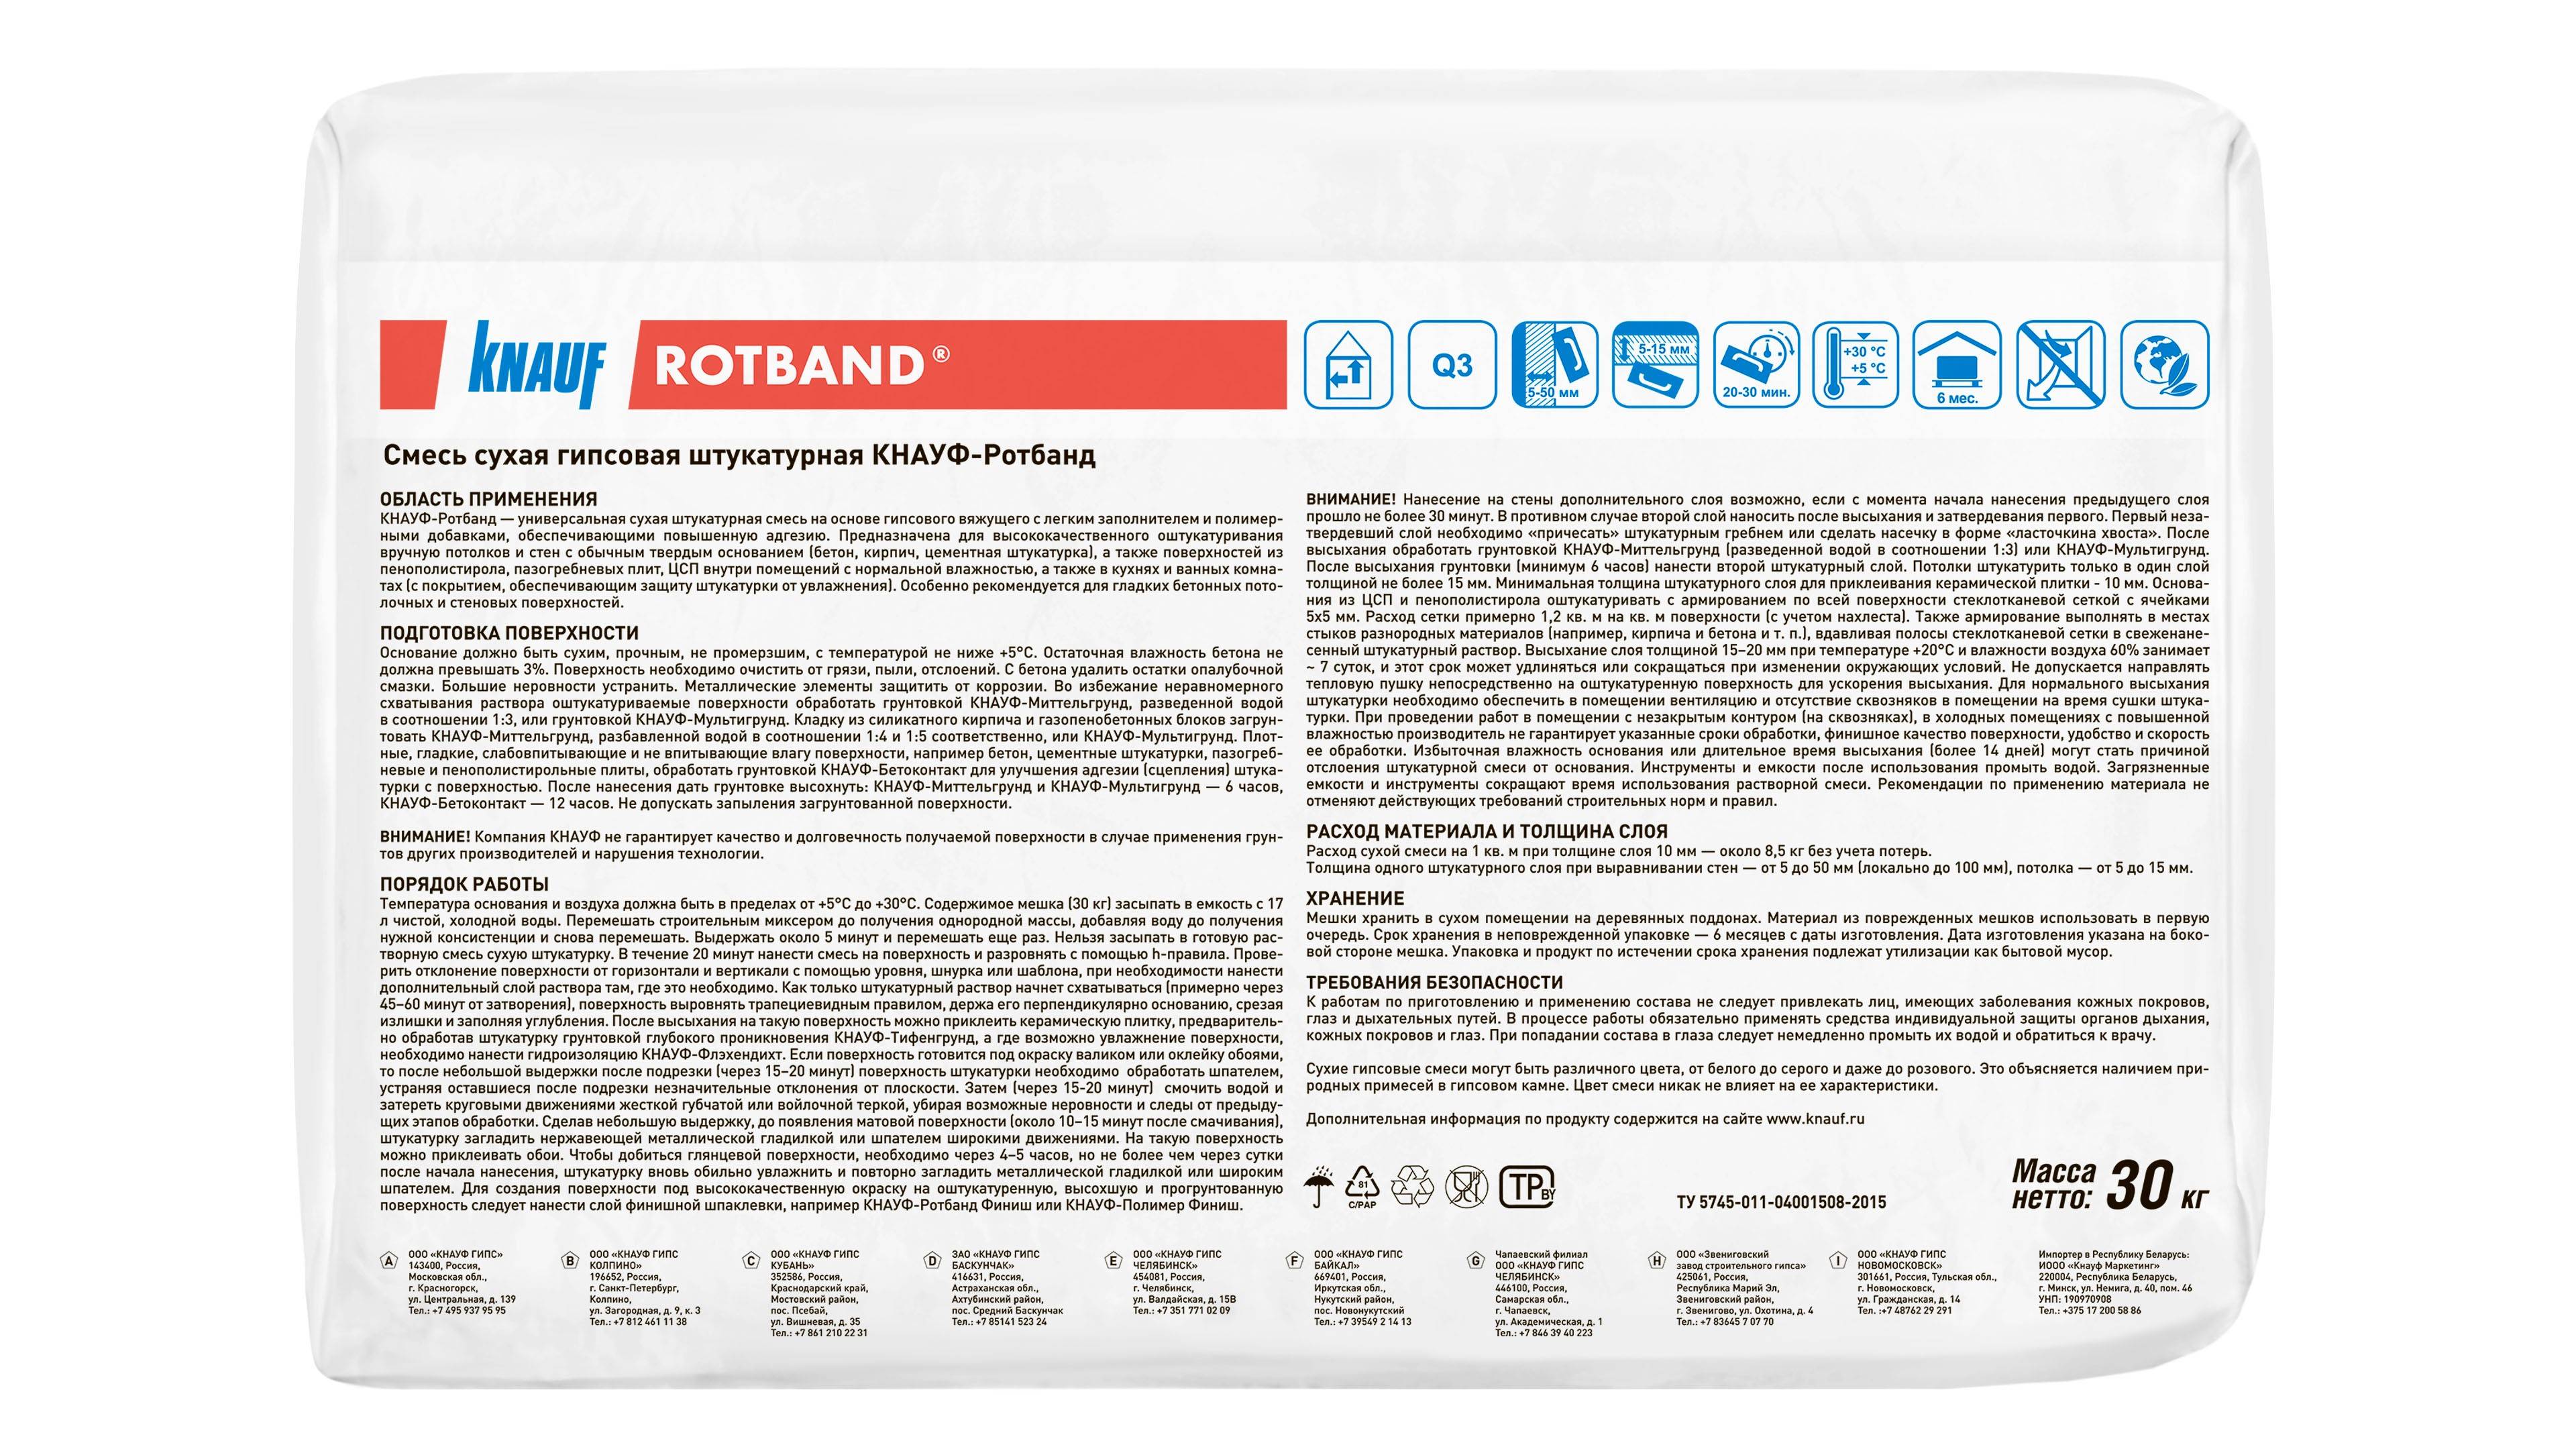 Гипсовая штукатурка ротбанд (rotband) - характеристики, особенности применения и выбора